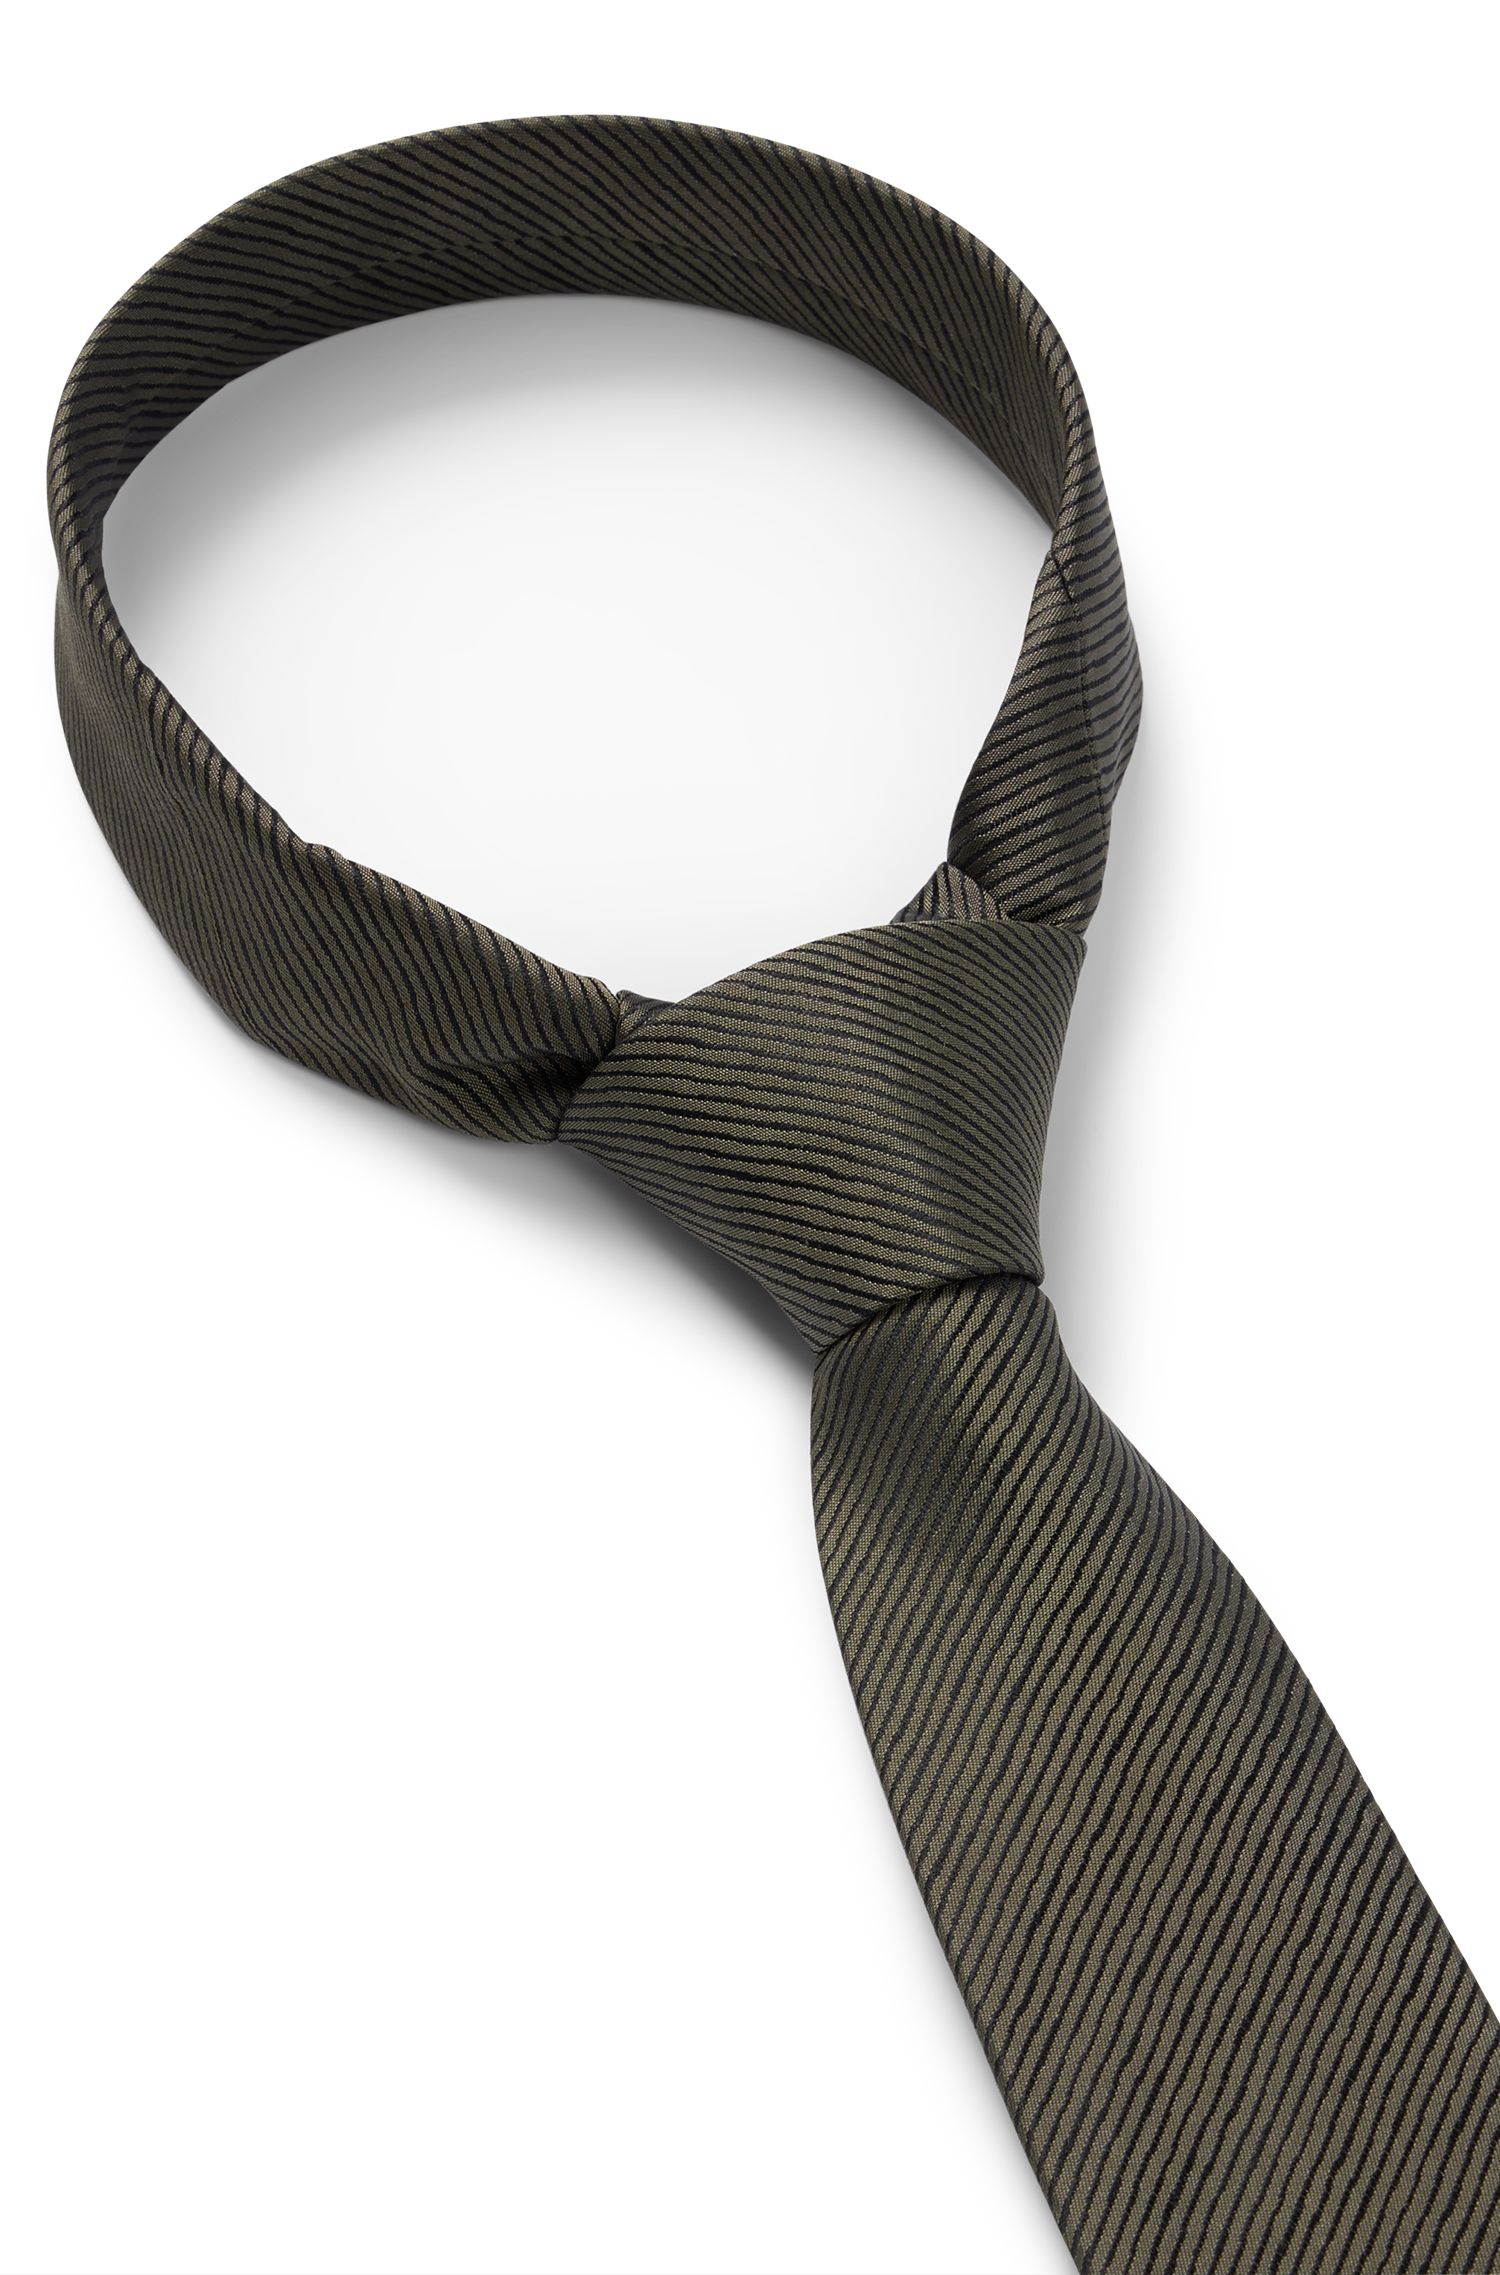 通体斜条纹领带